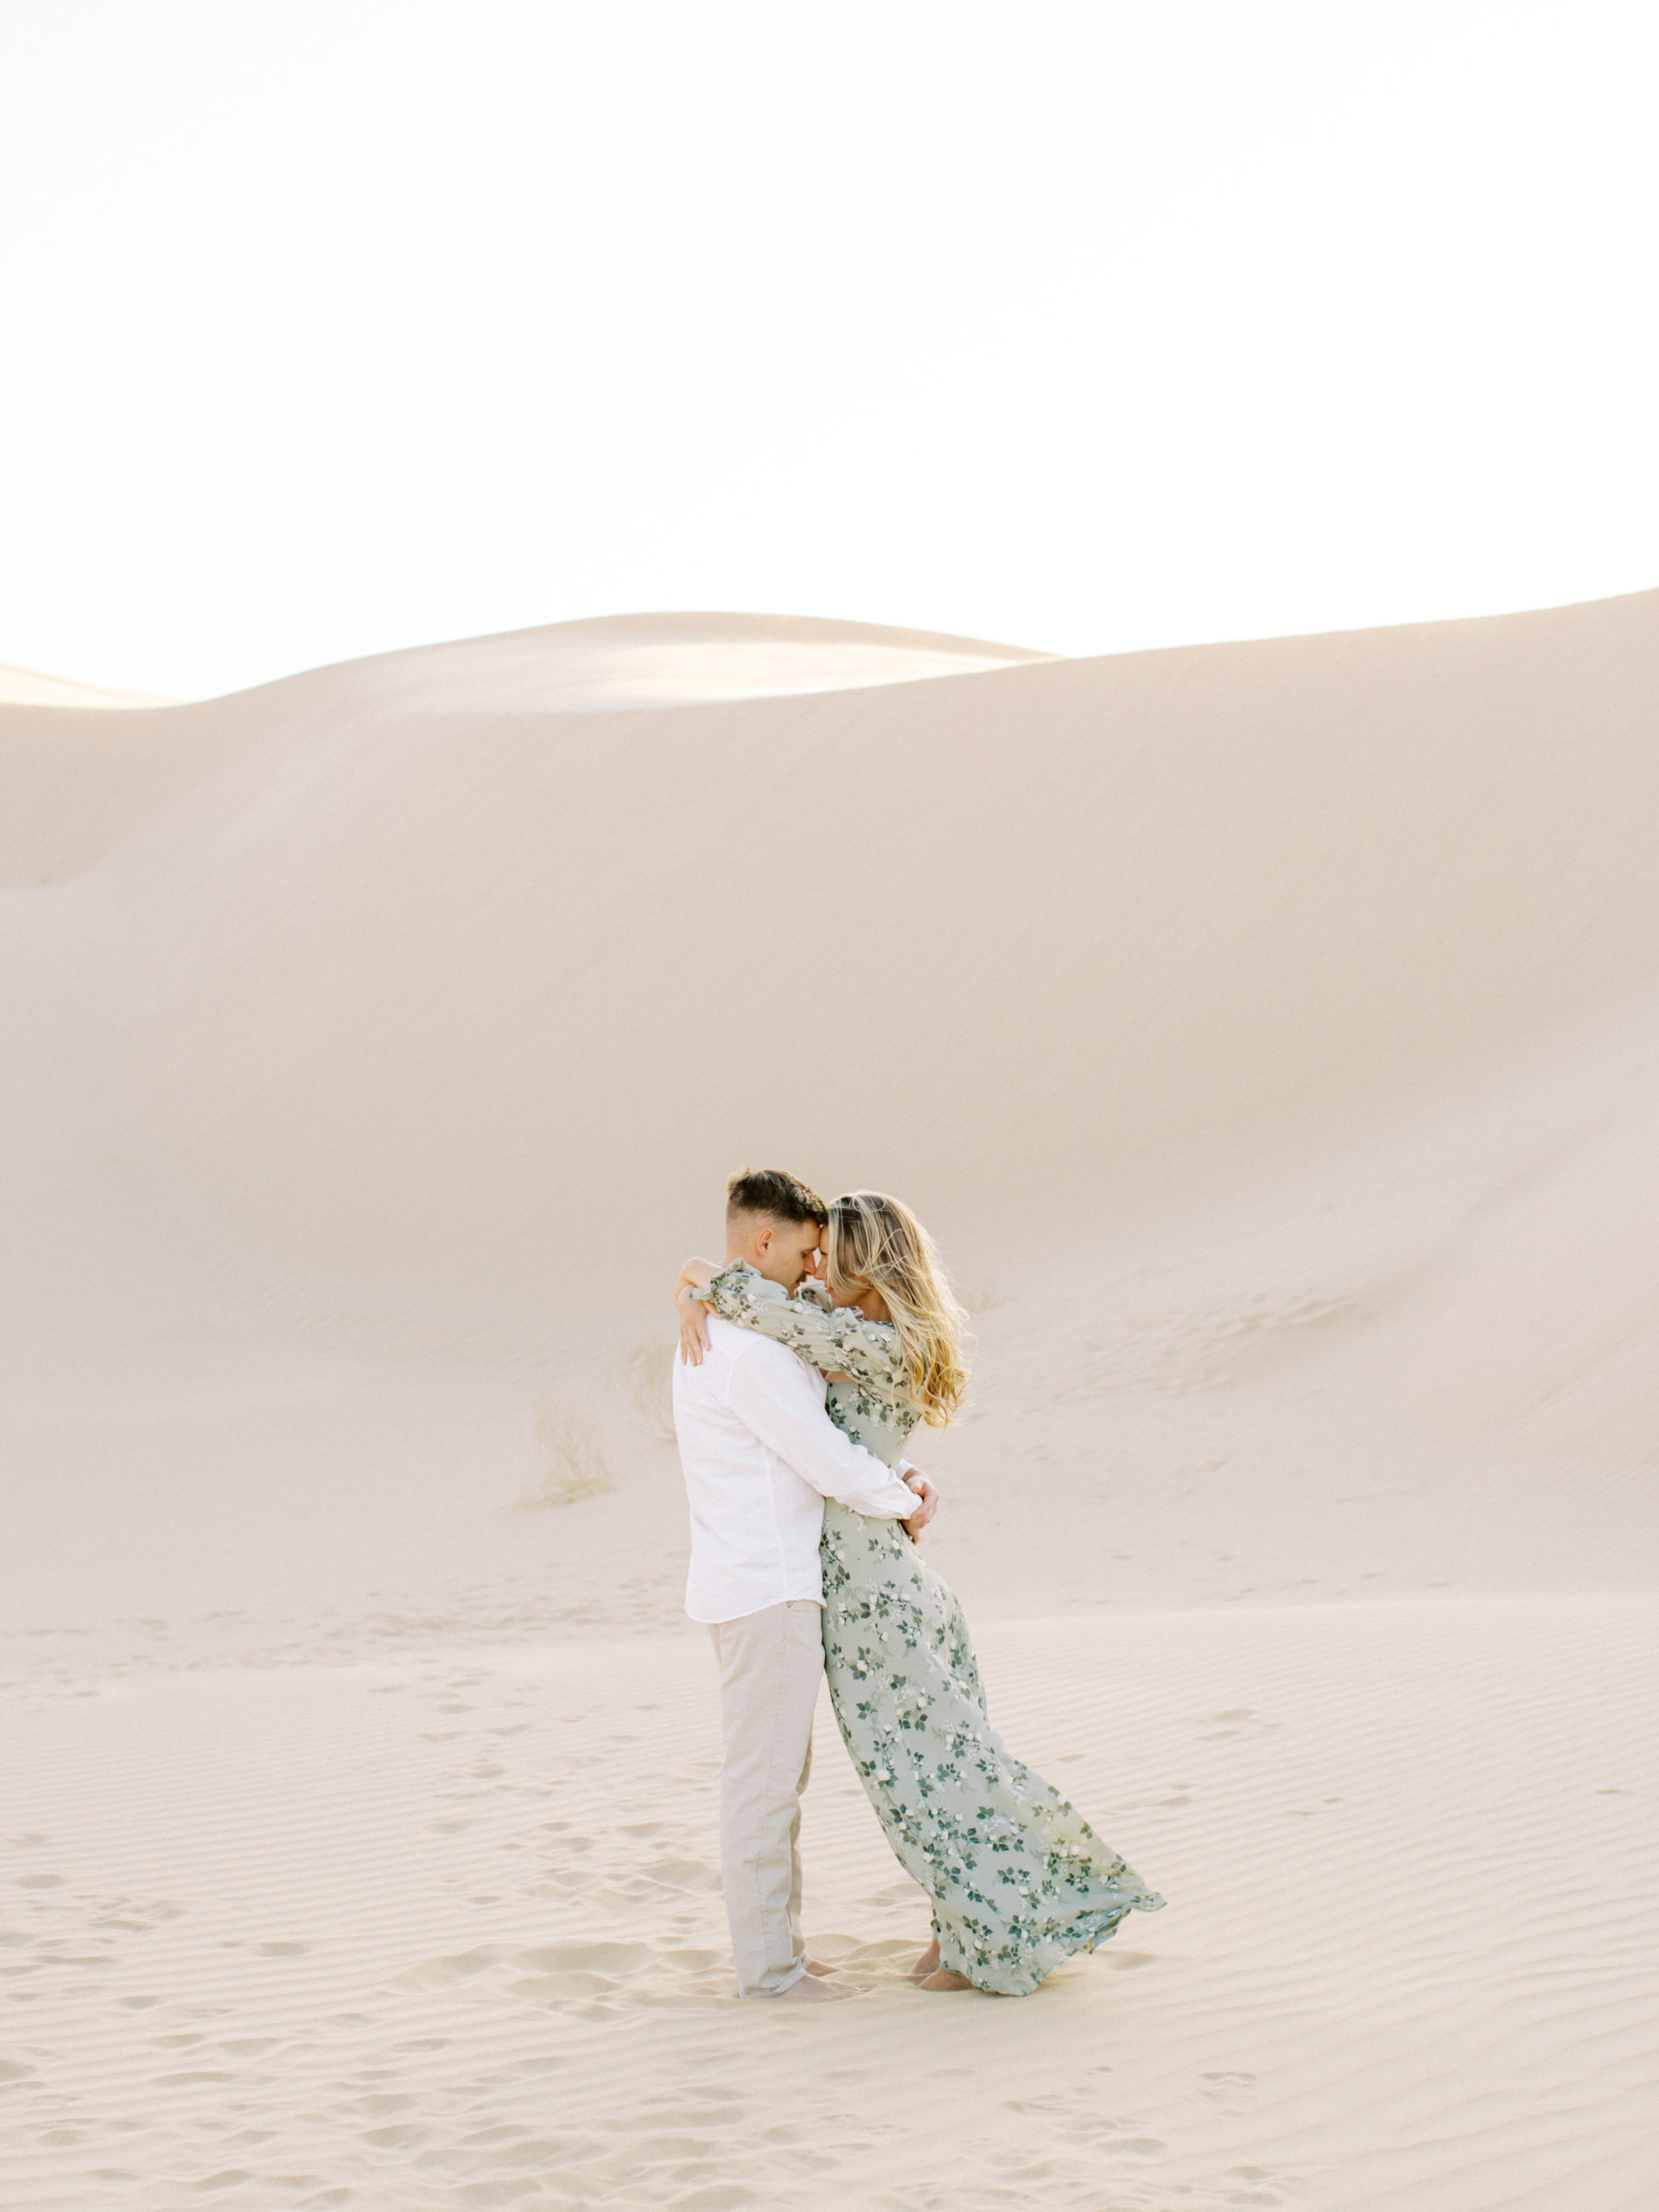 imperial-dunes-yuma-engagement-couple-hugging-image